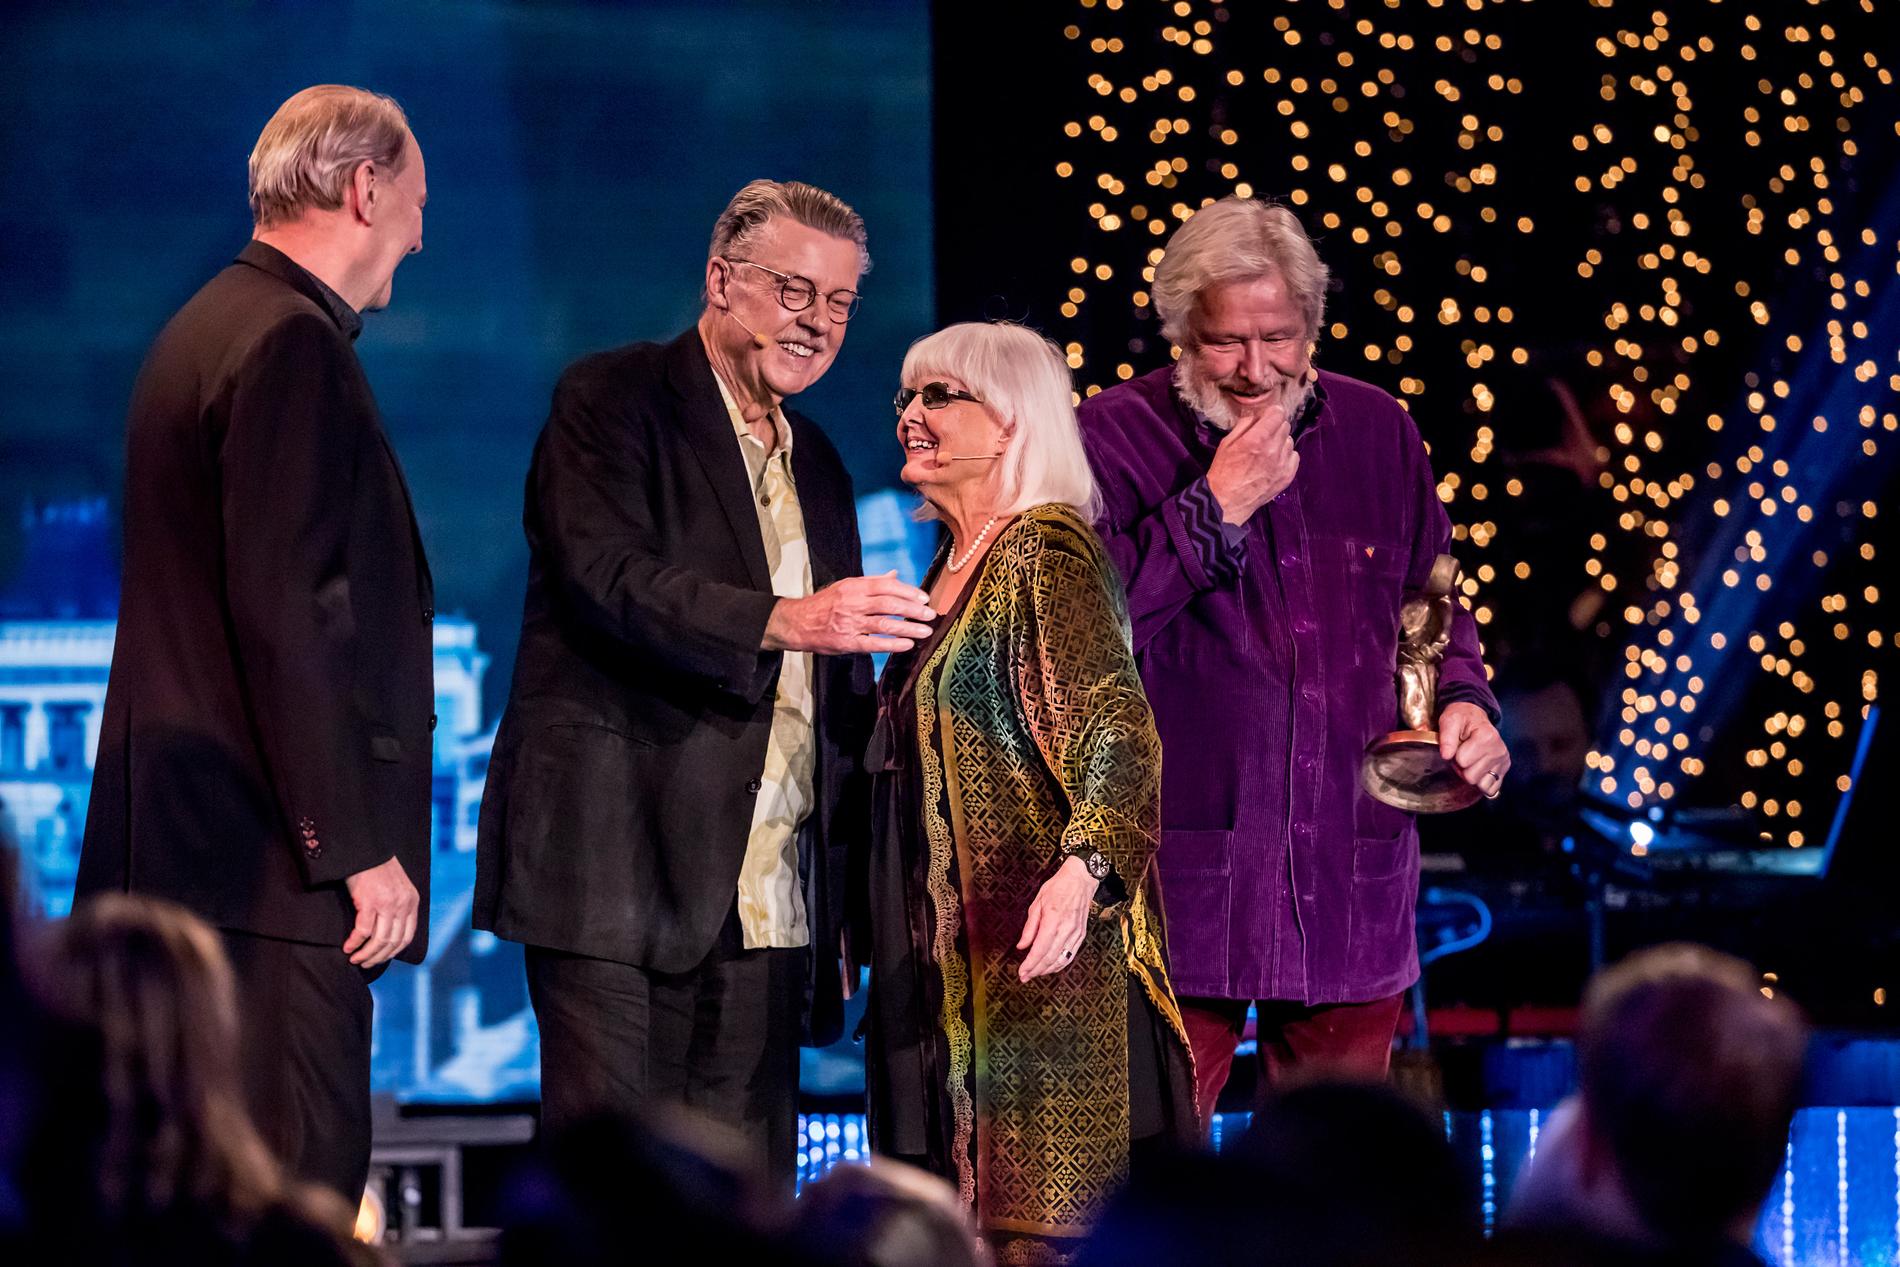 Anita D'Orazio överraskades på scenen av sina största idoler Björn Granath, Mikael Wiehe och Sven Wollter.